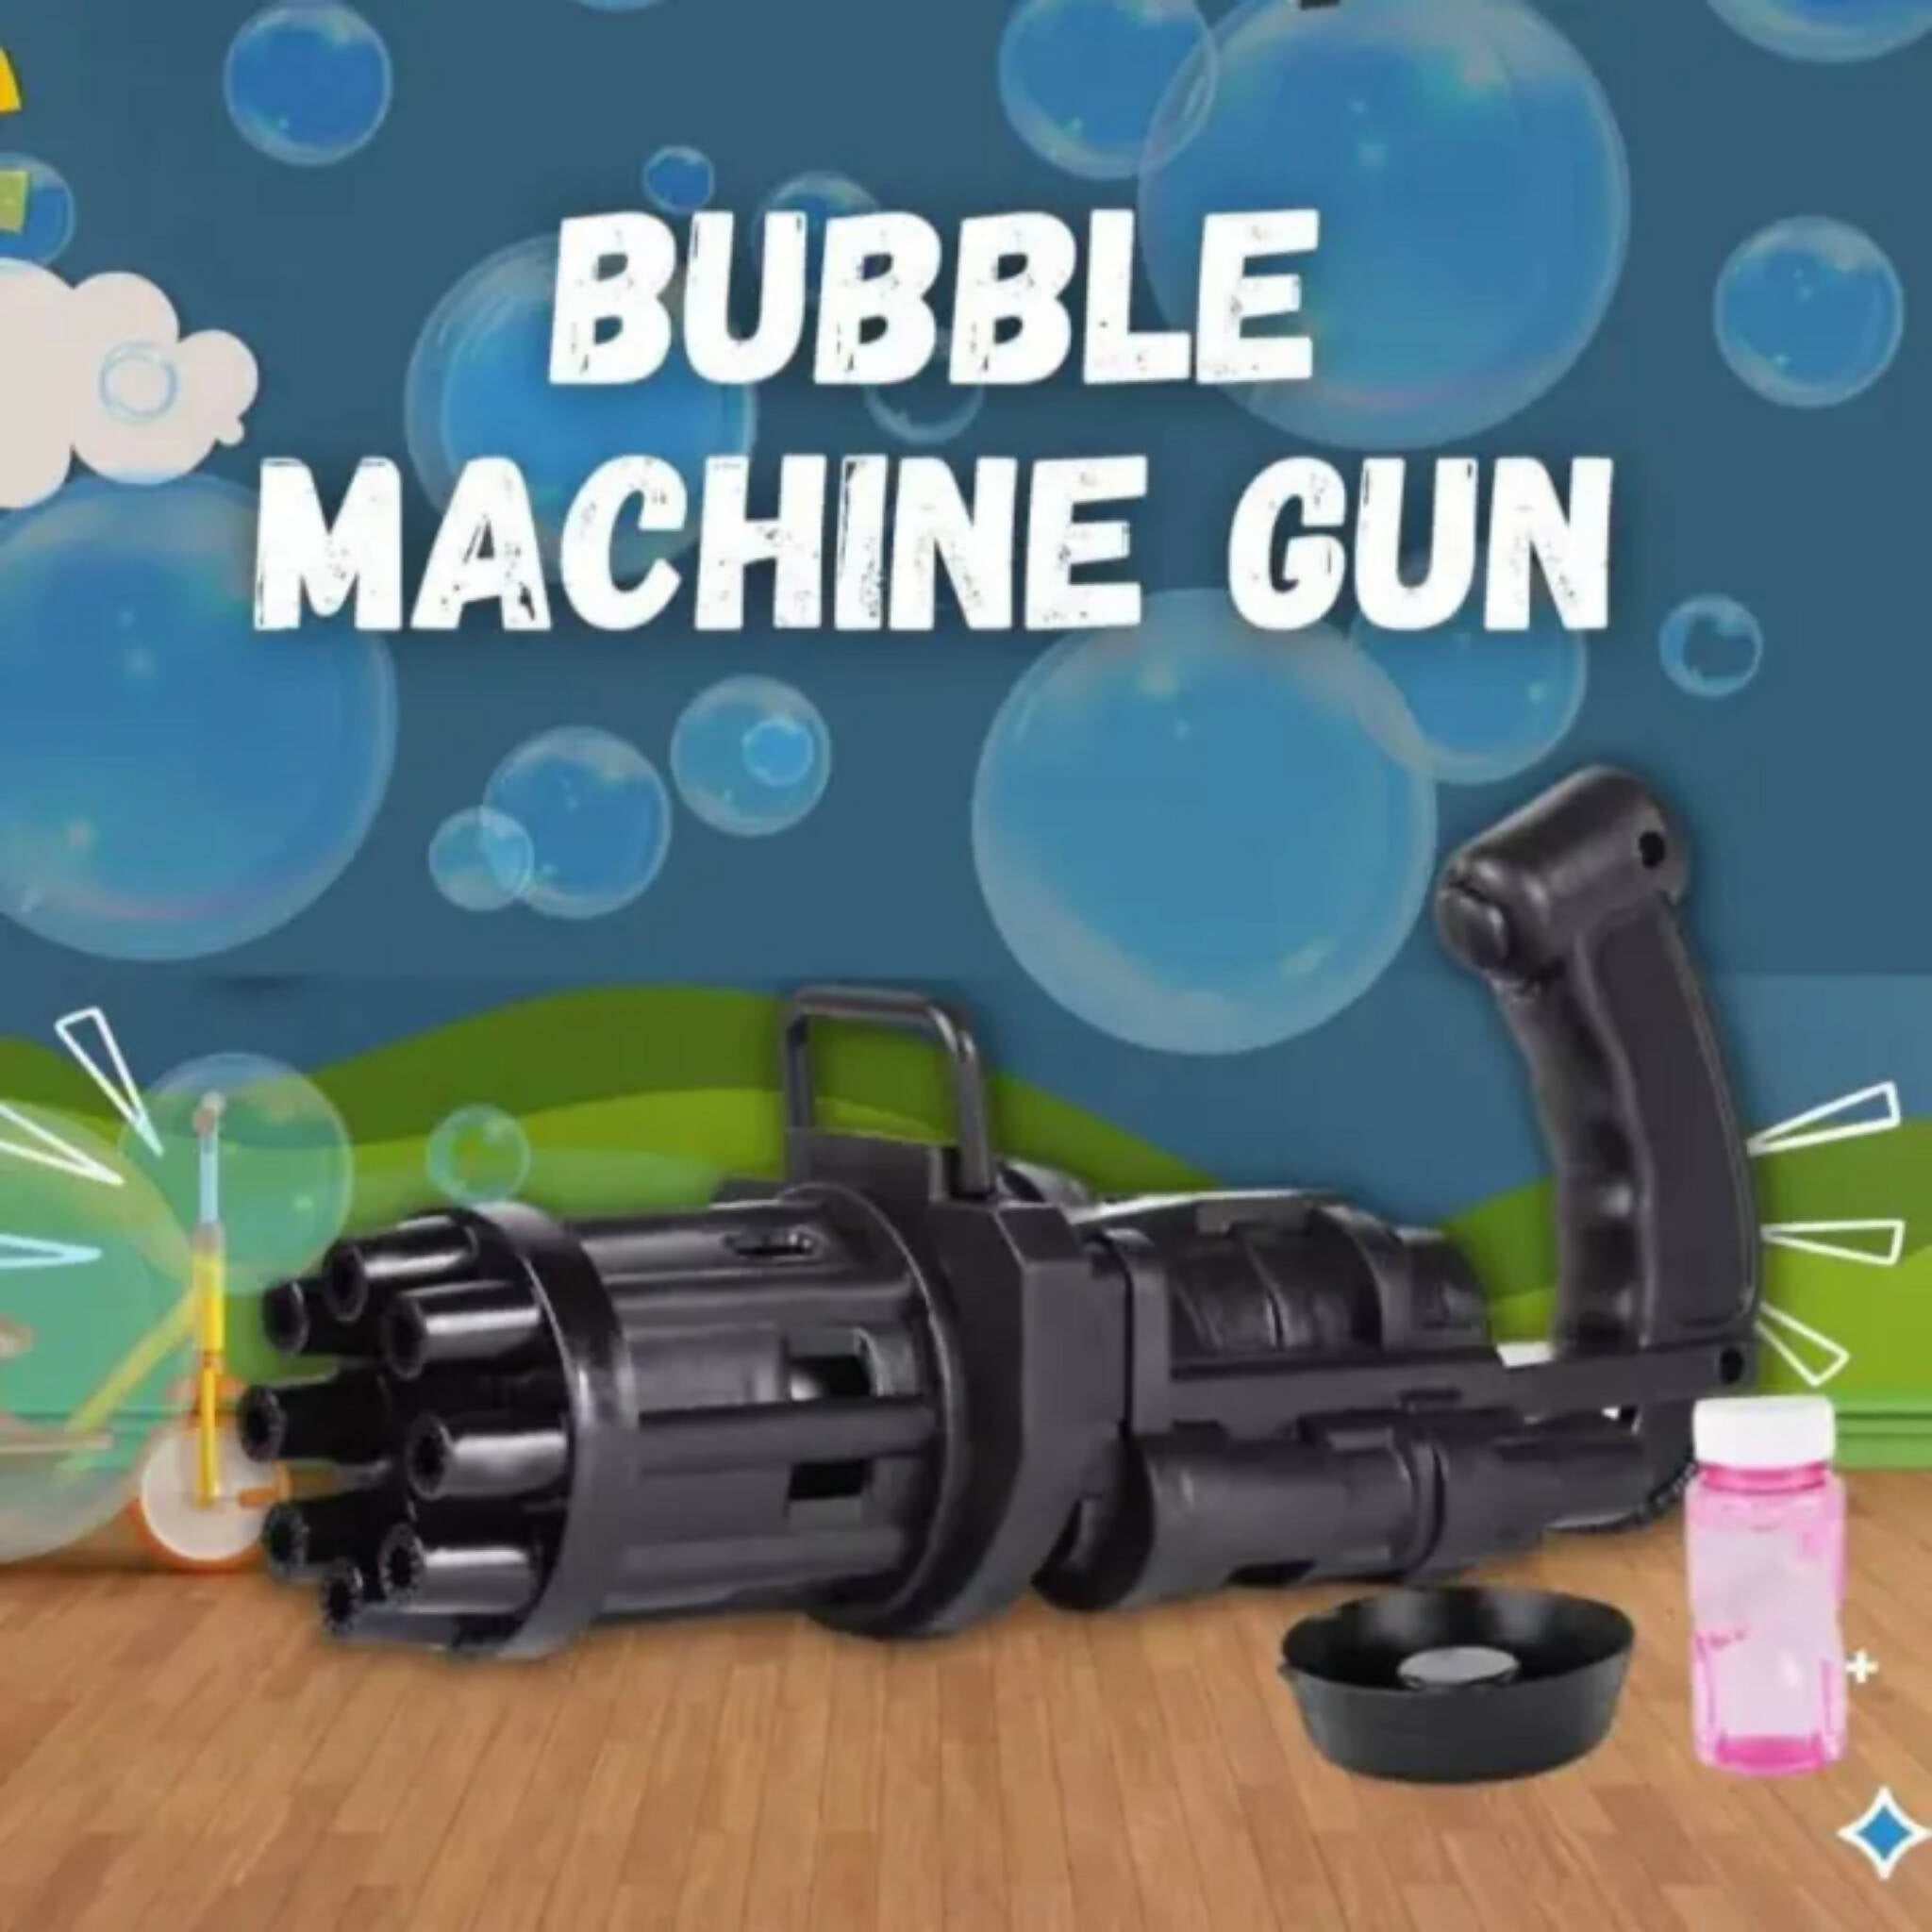 Bubble Machine!, Unleash the Bubble Fun - 8-Hole